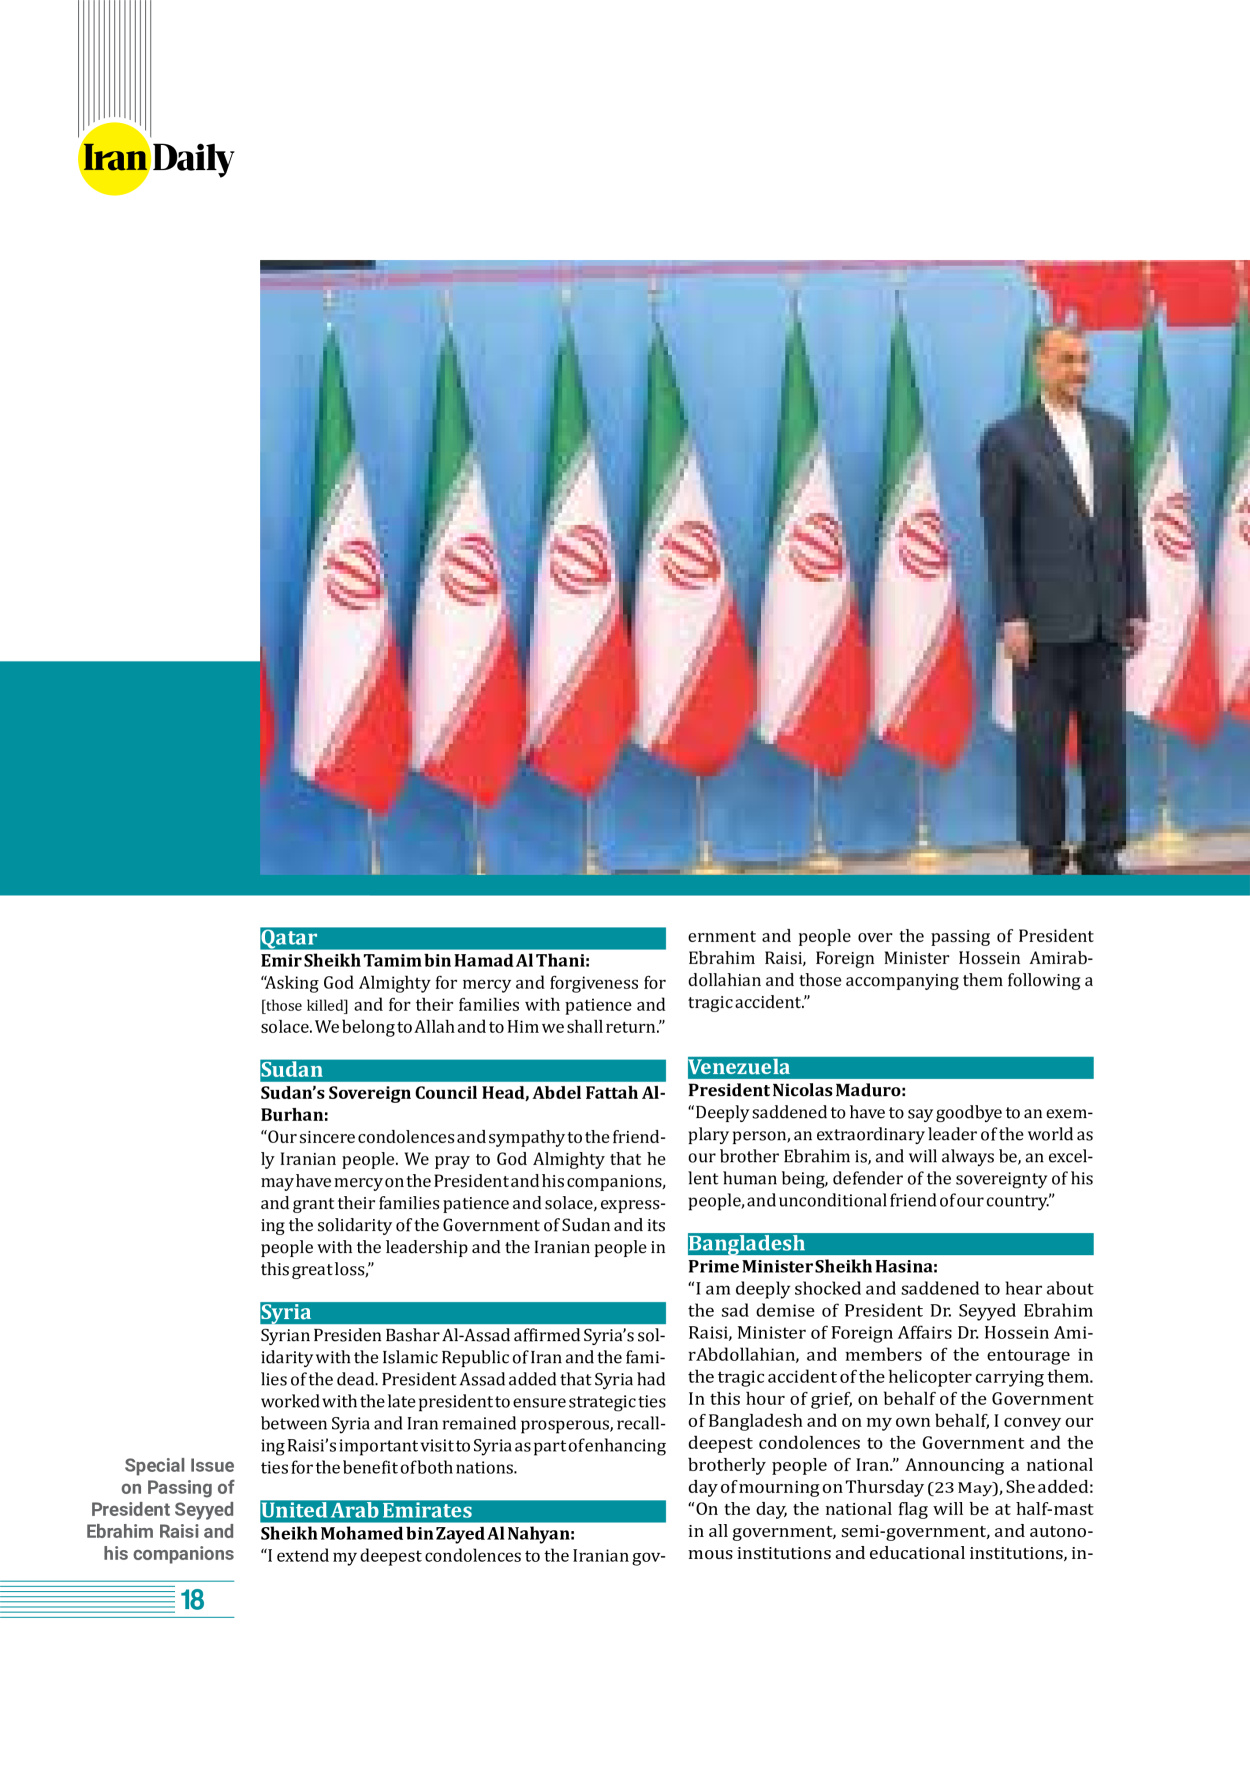 روزنامه ایران - ویژه نامه وِزه نامه چهلم شهید رییسی( انگلیسی) - ۱۷ تیر ۱۴۰۳ - صفحه ۱۸